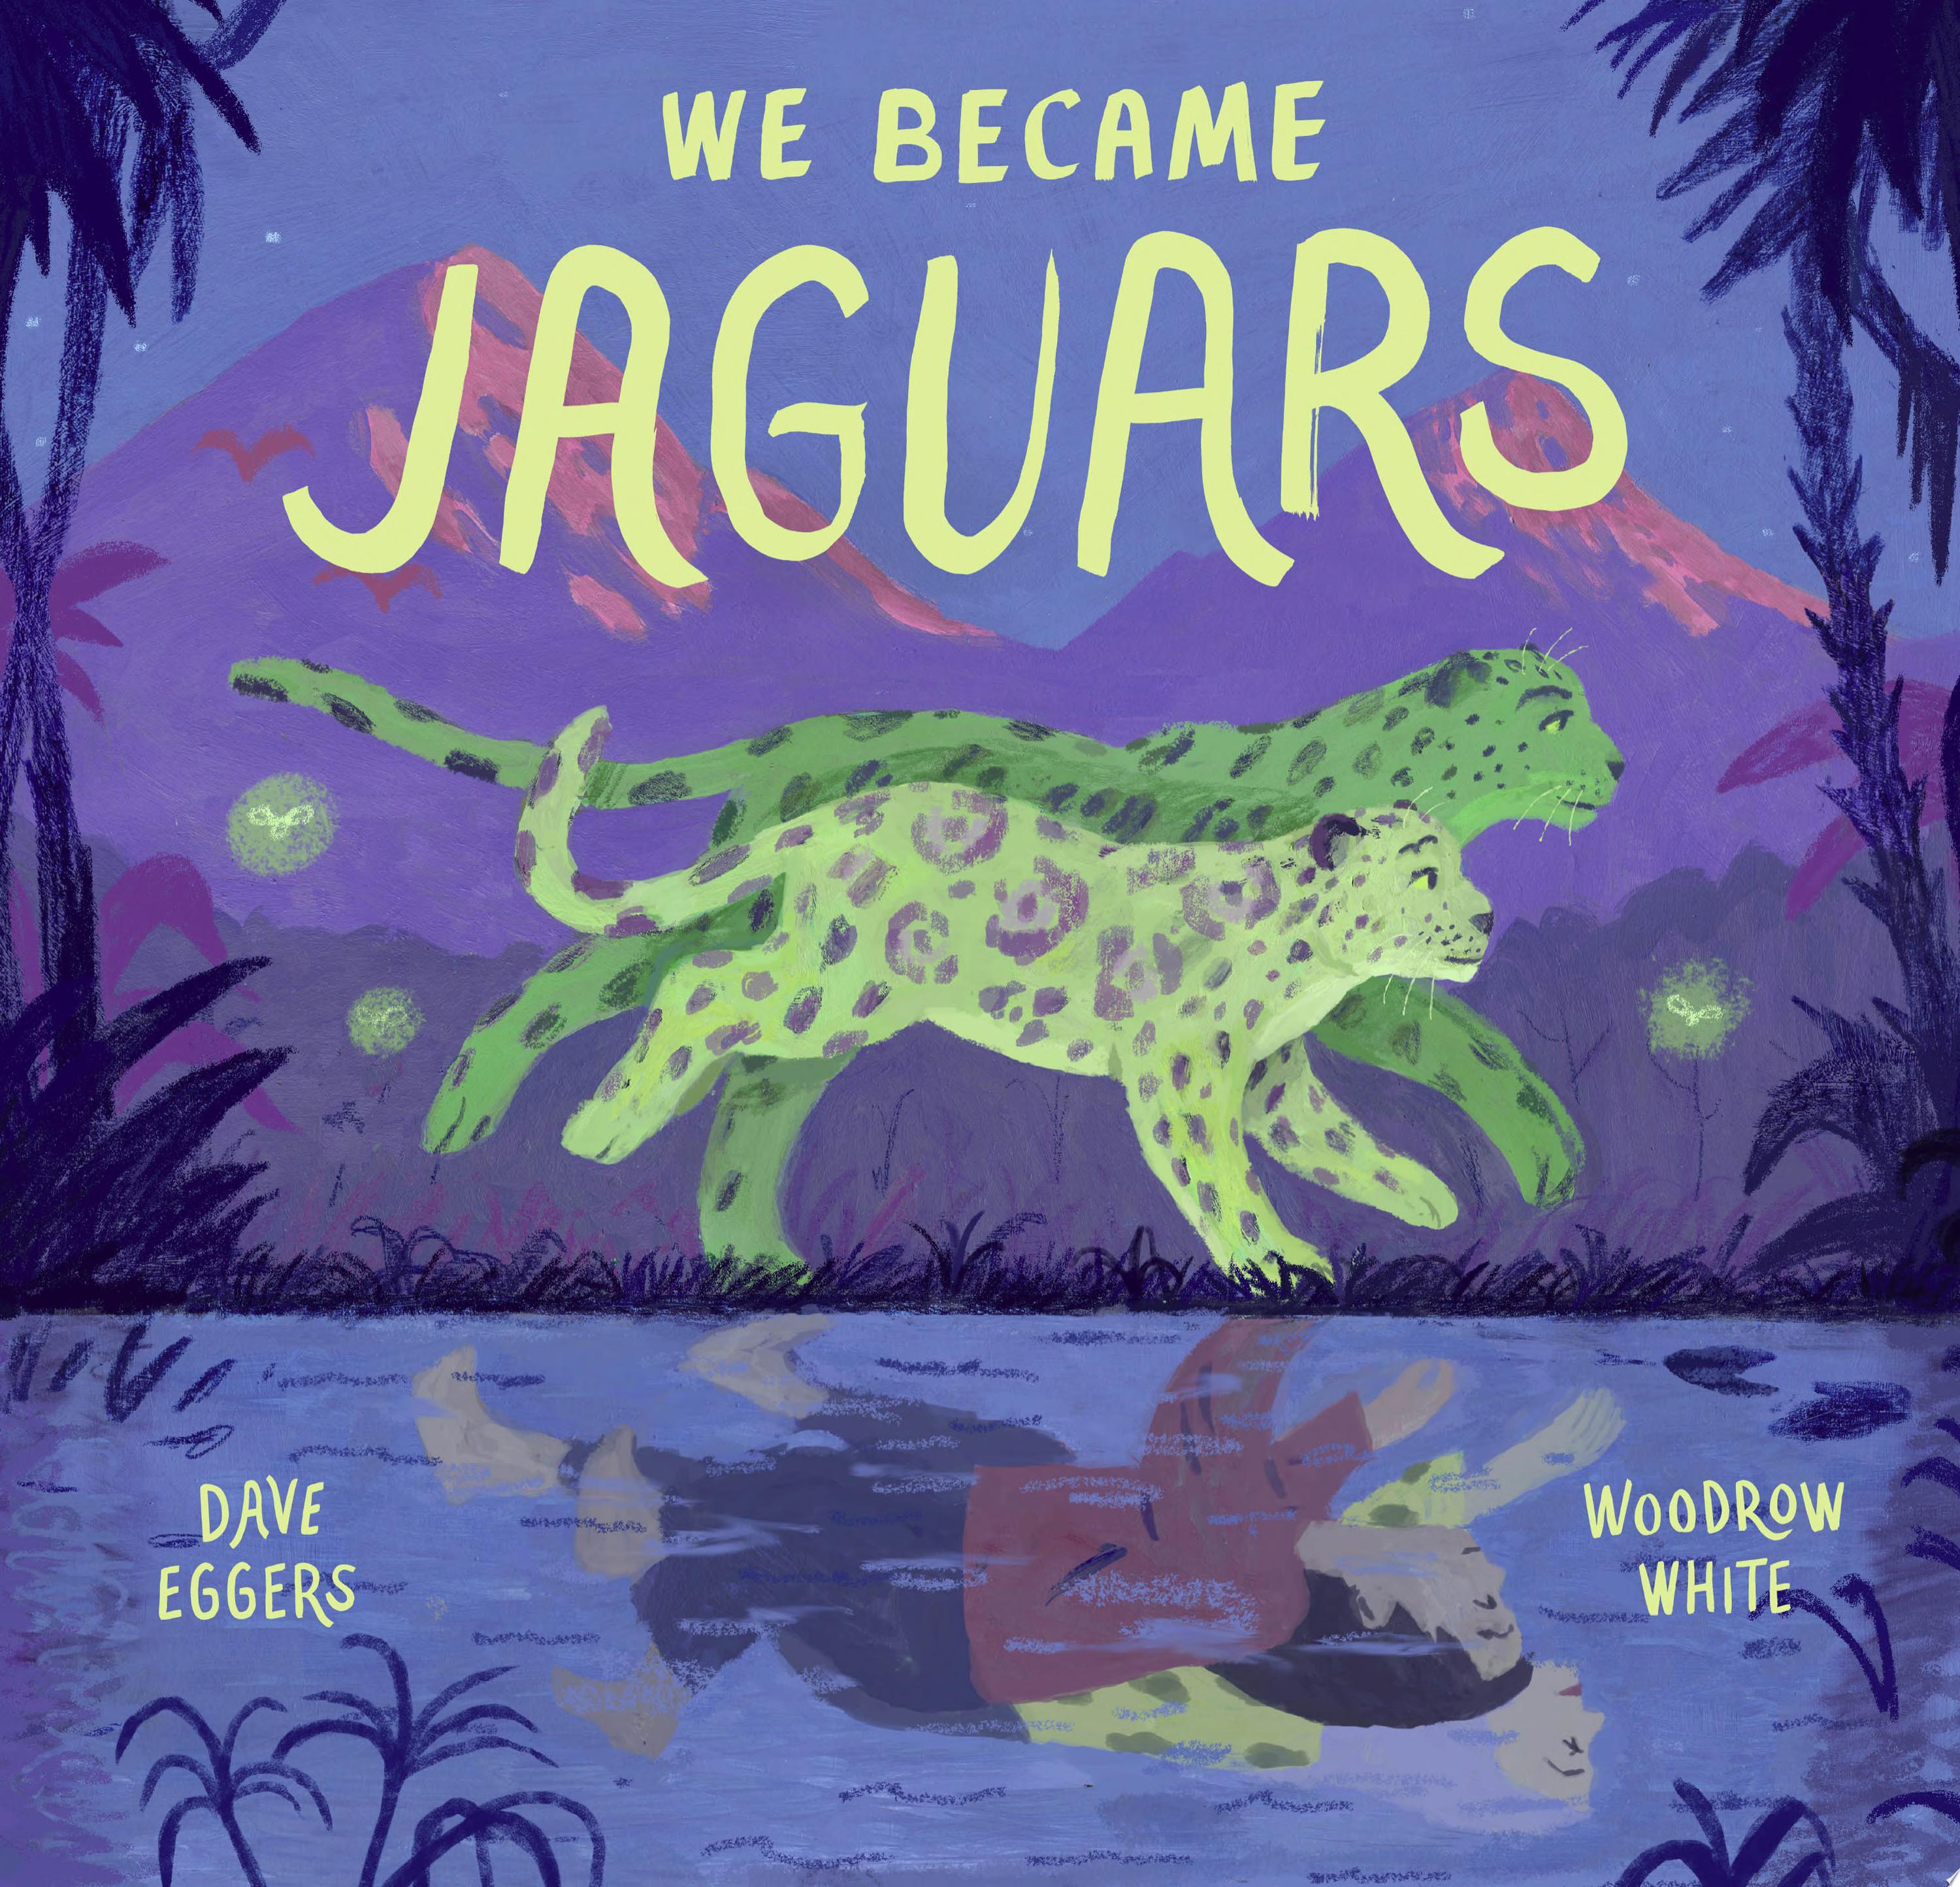 Image for "We Became Jaguars"